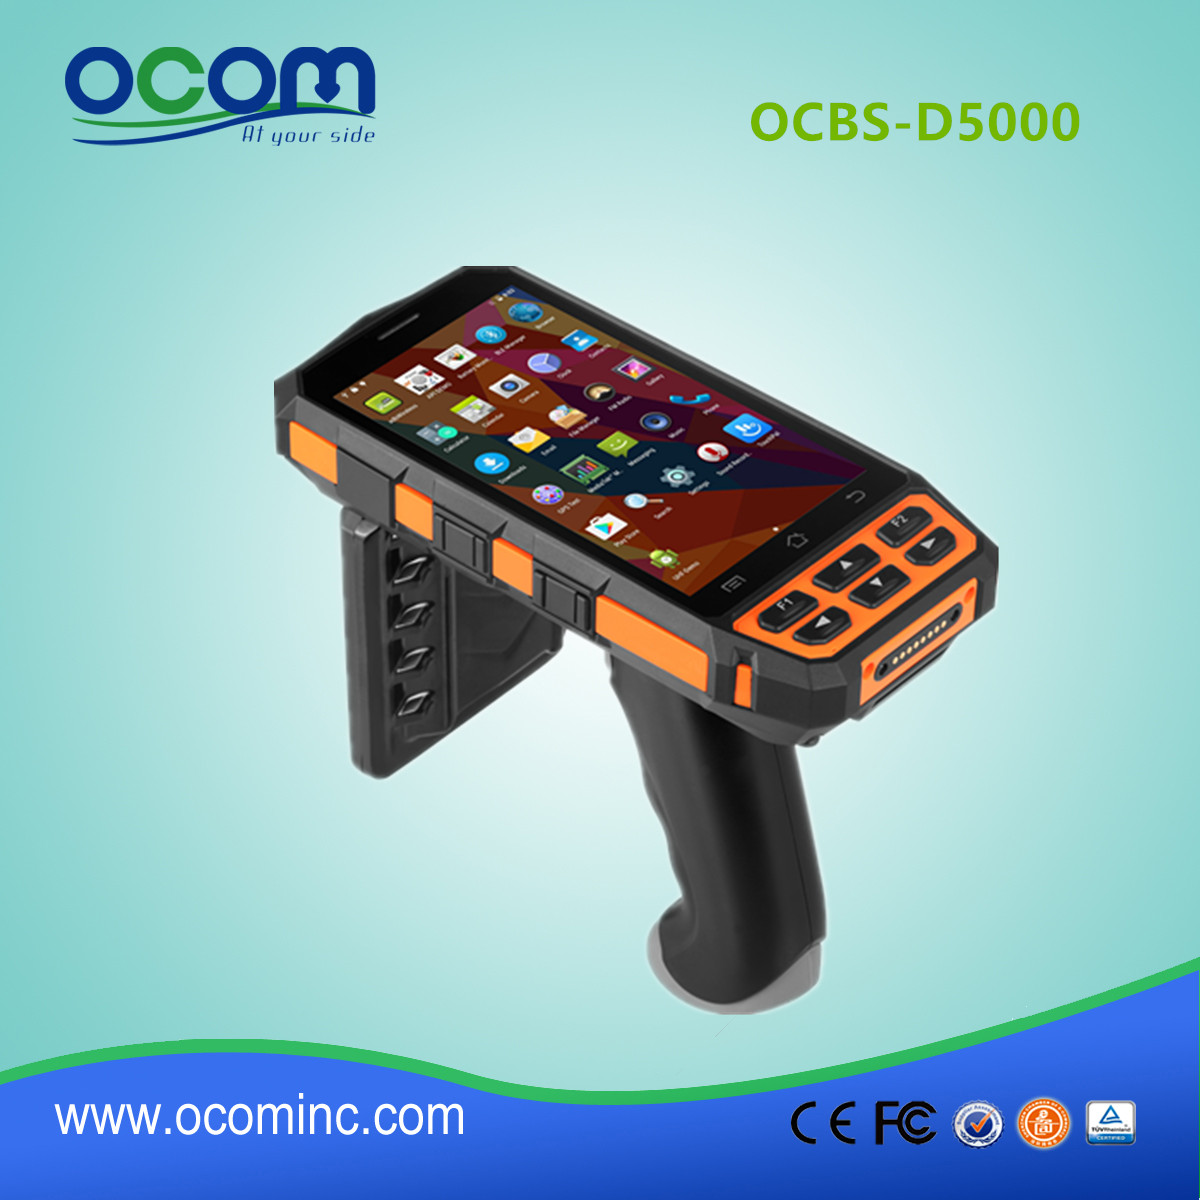 Nuevo modelo OCBS-D5000 Android Terminal de mano industrial